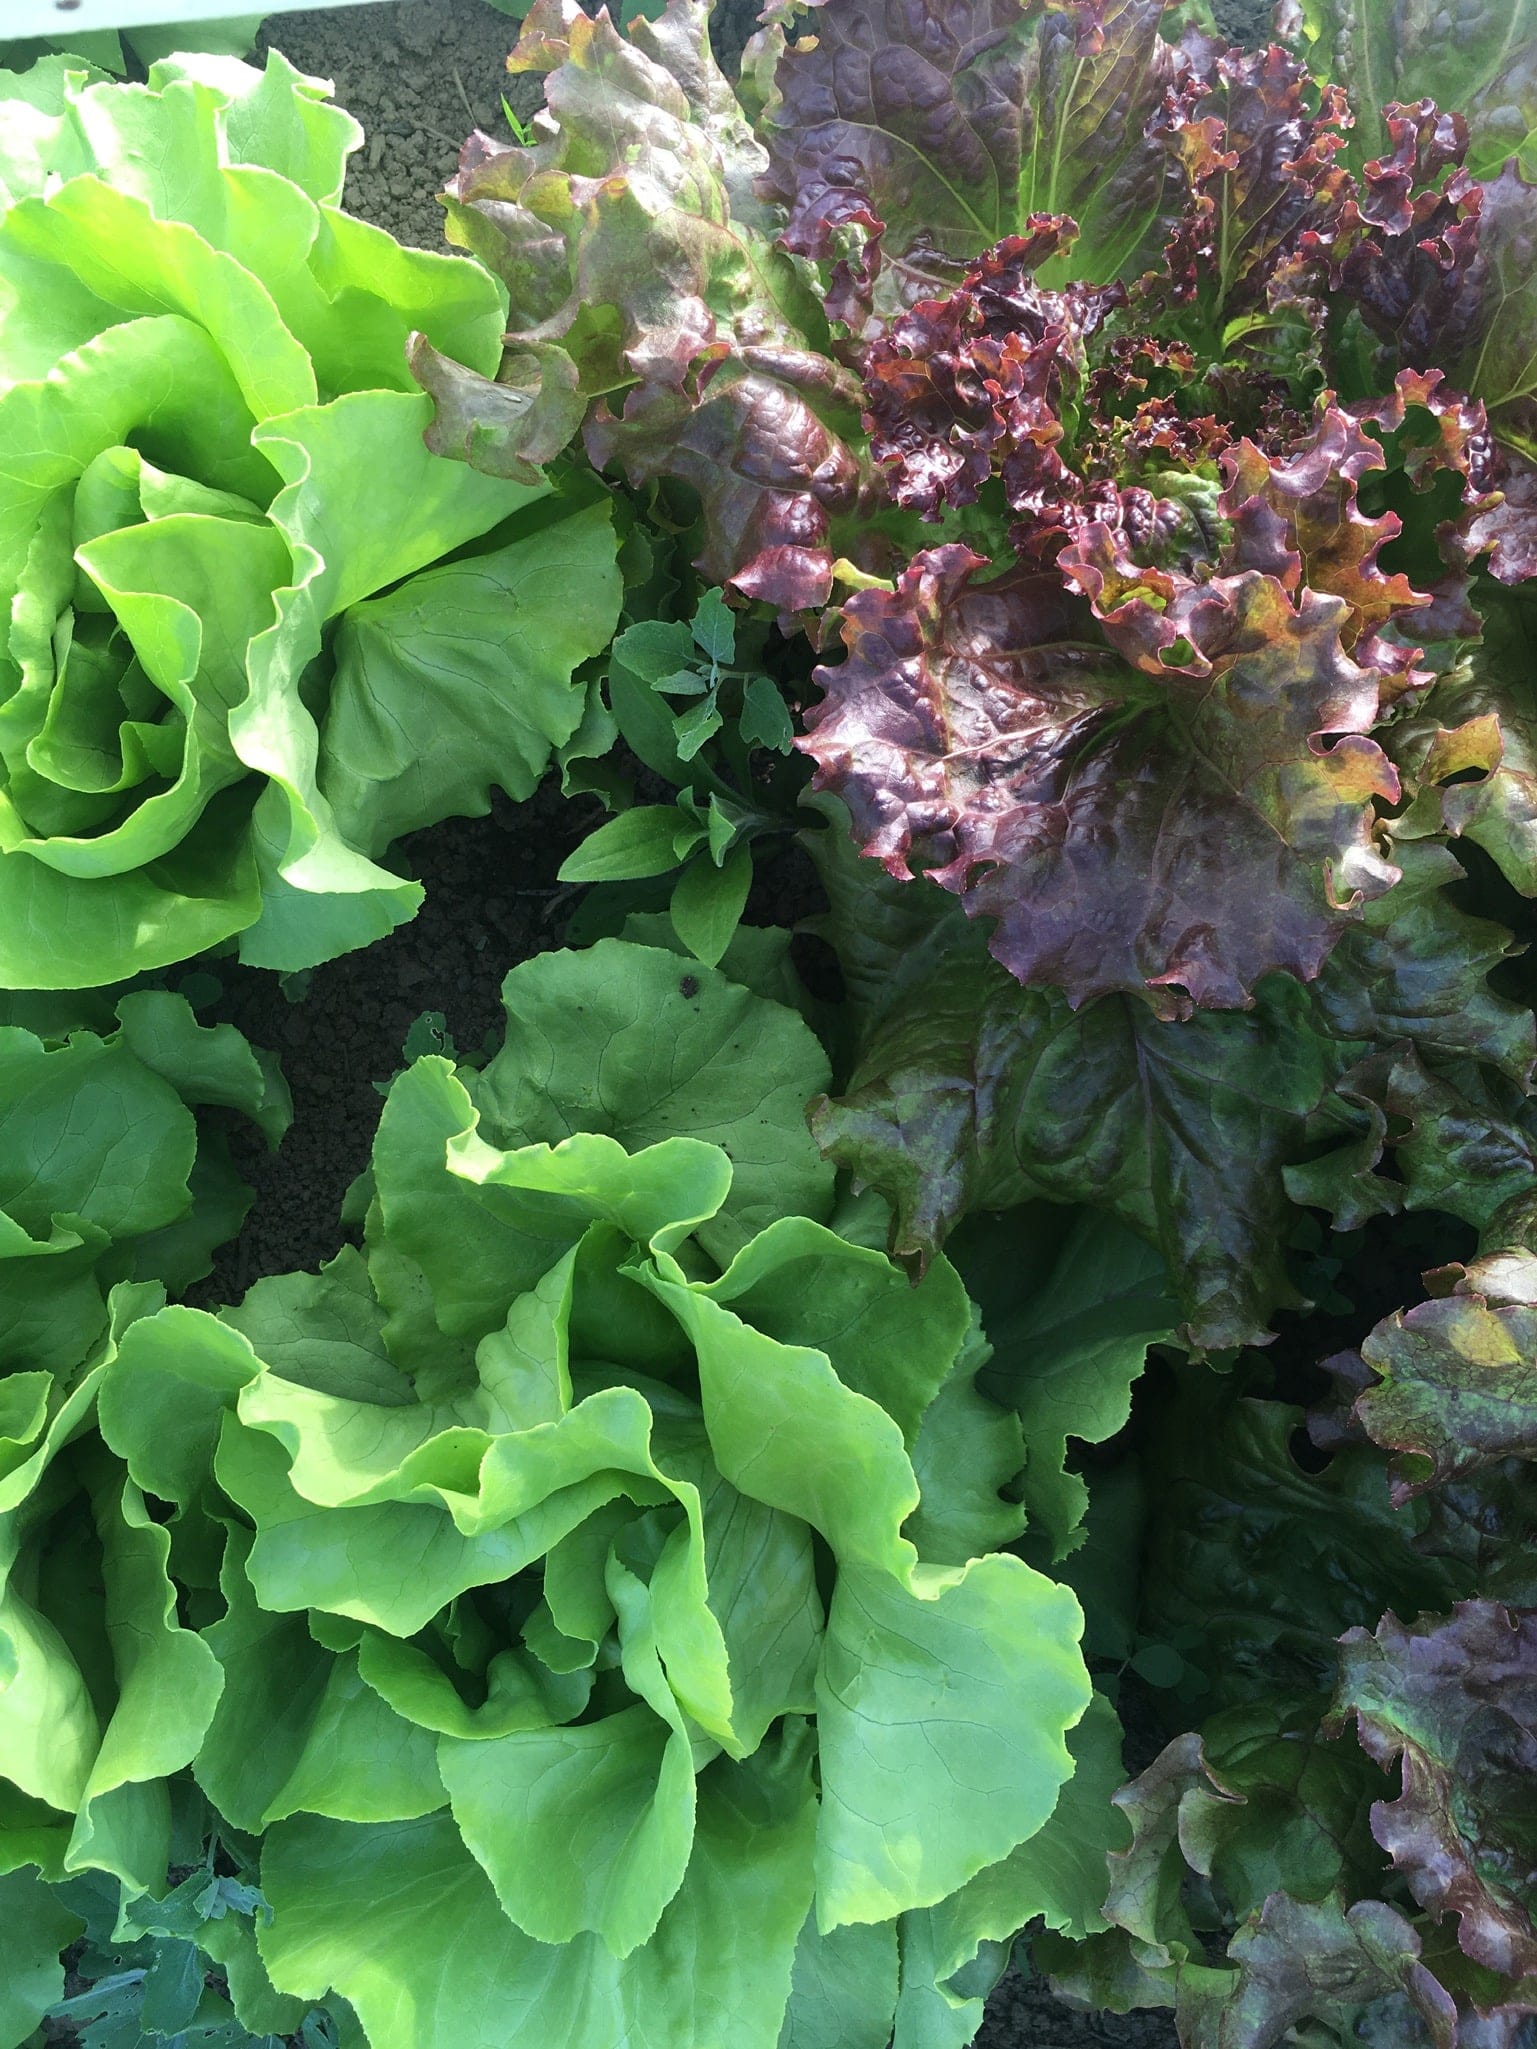 Organic Lettuce in the Field